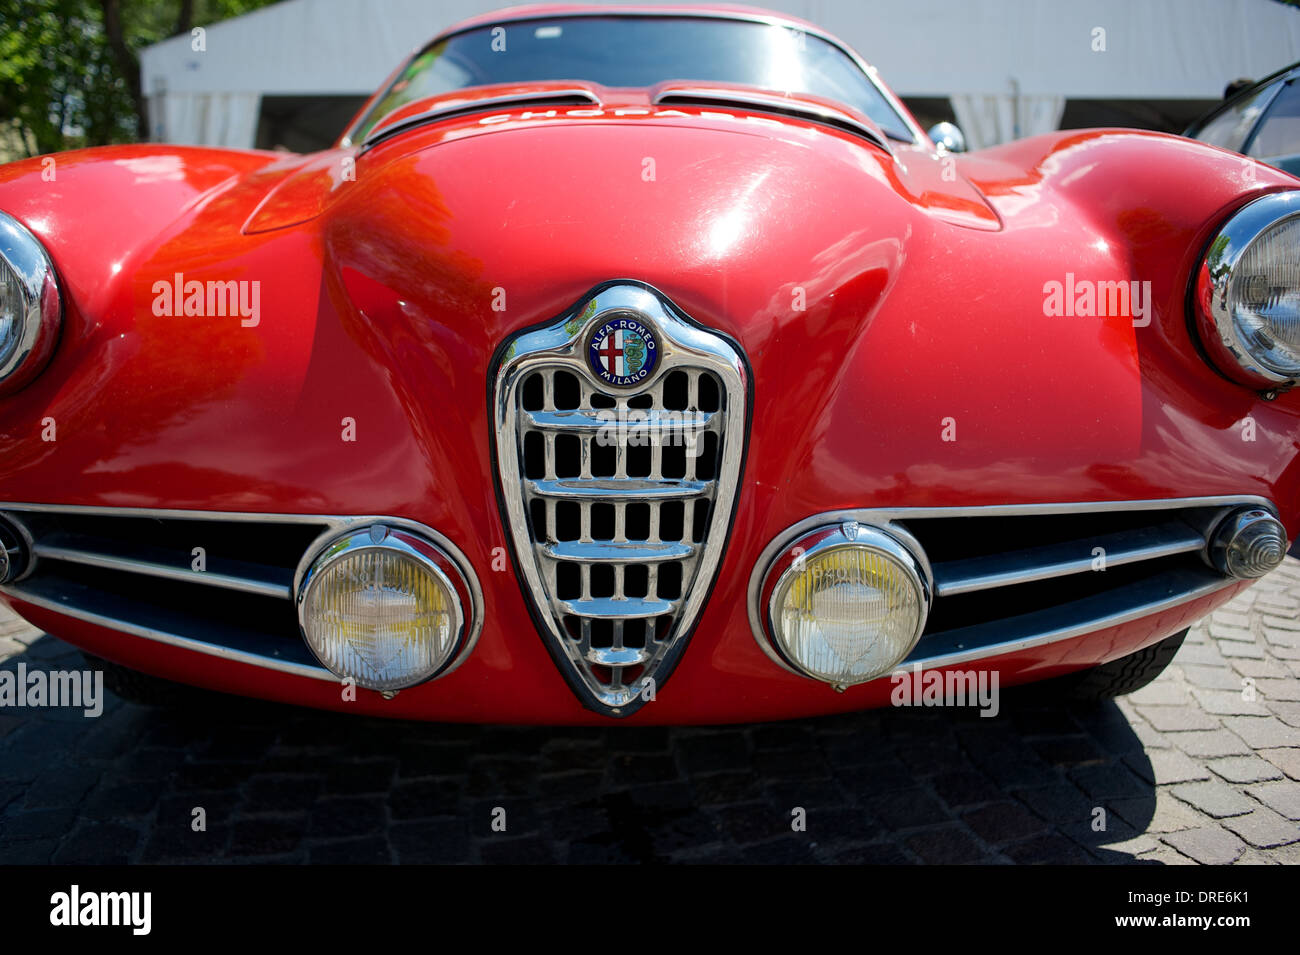 Alfa Romeo Coches Antiguos Foto de stock